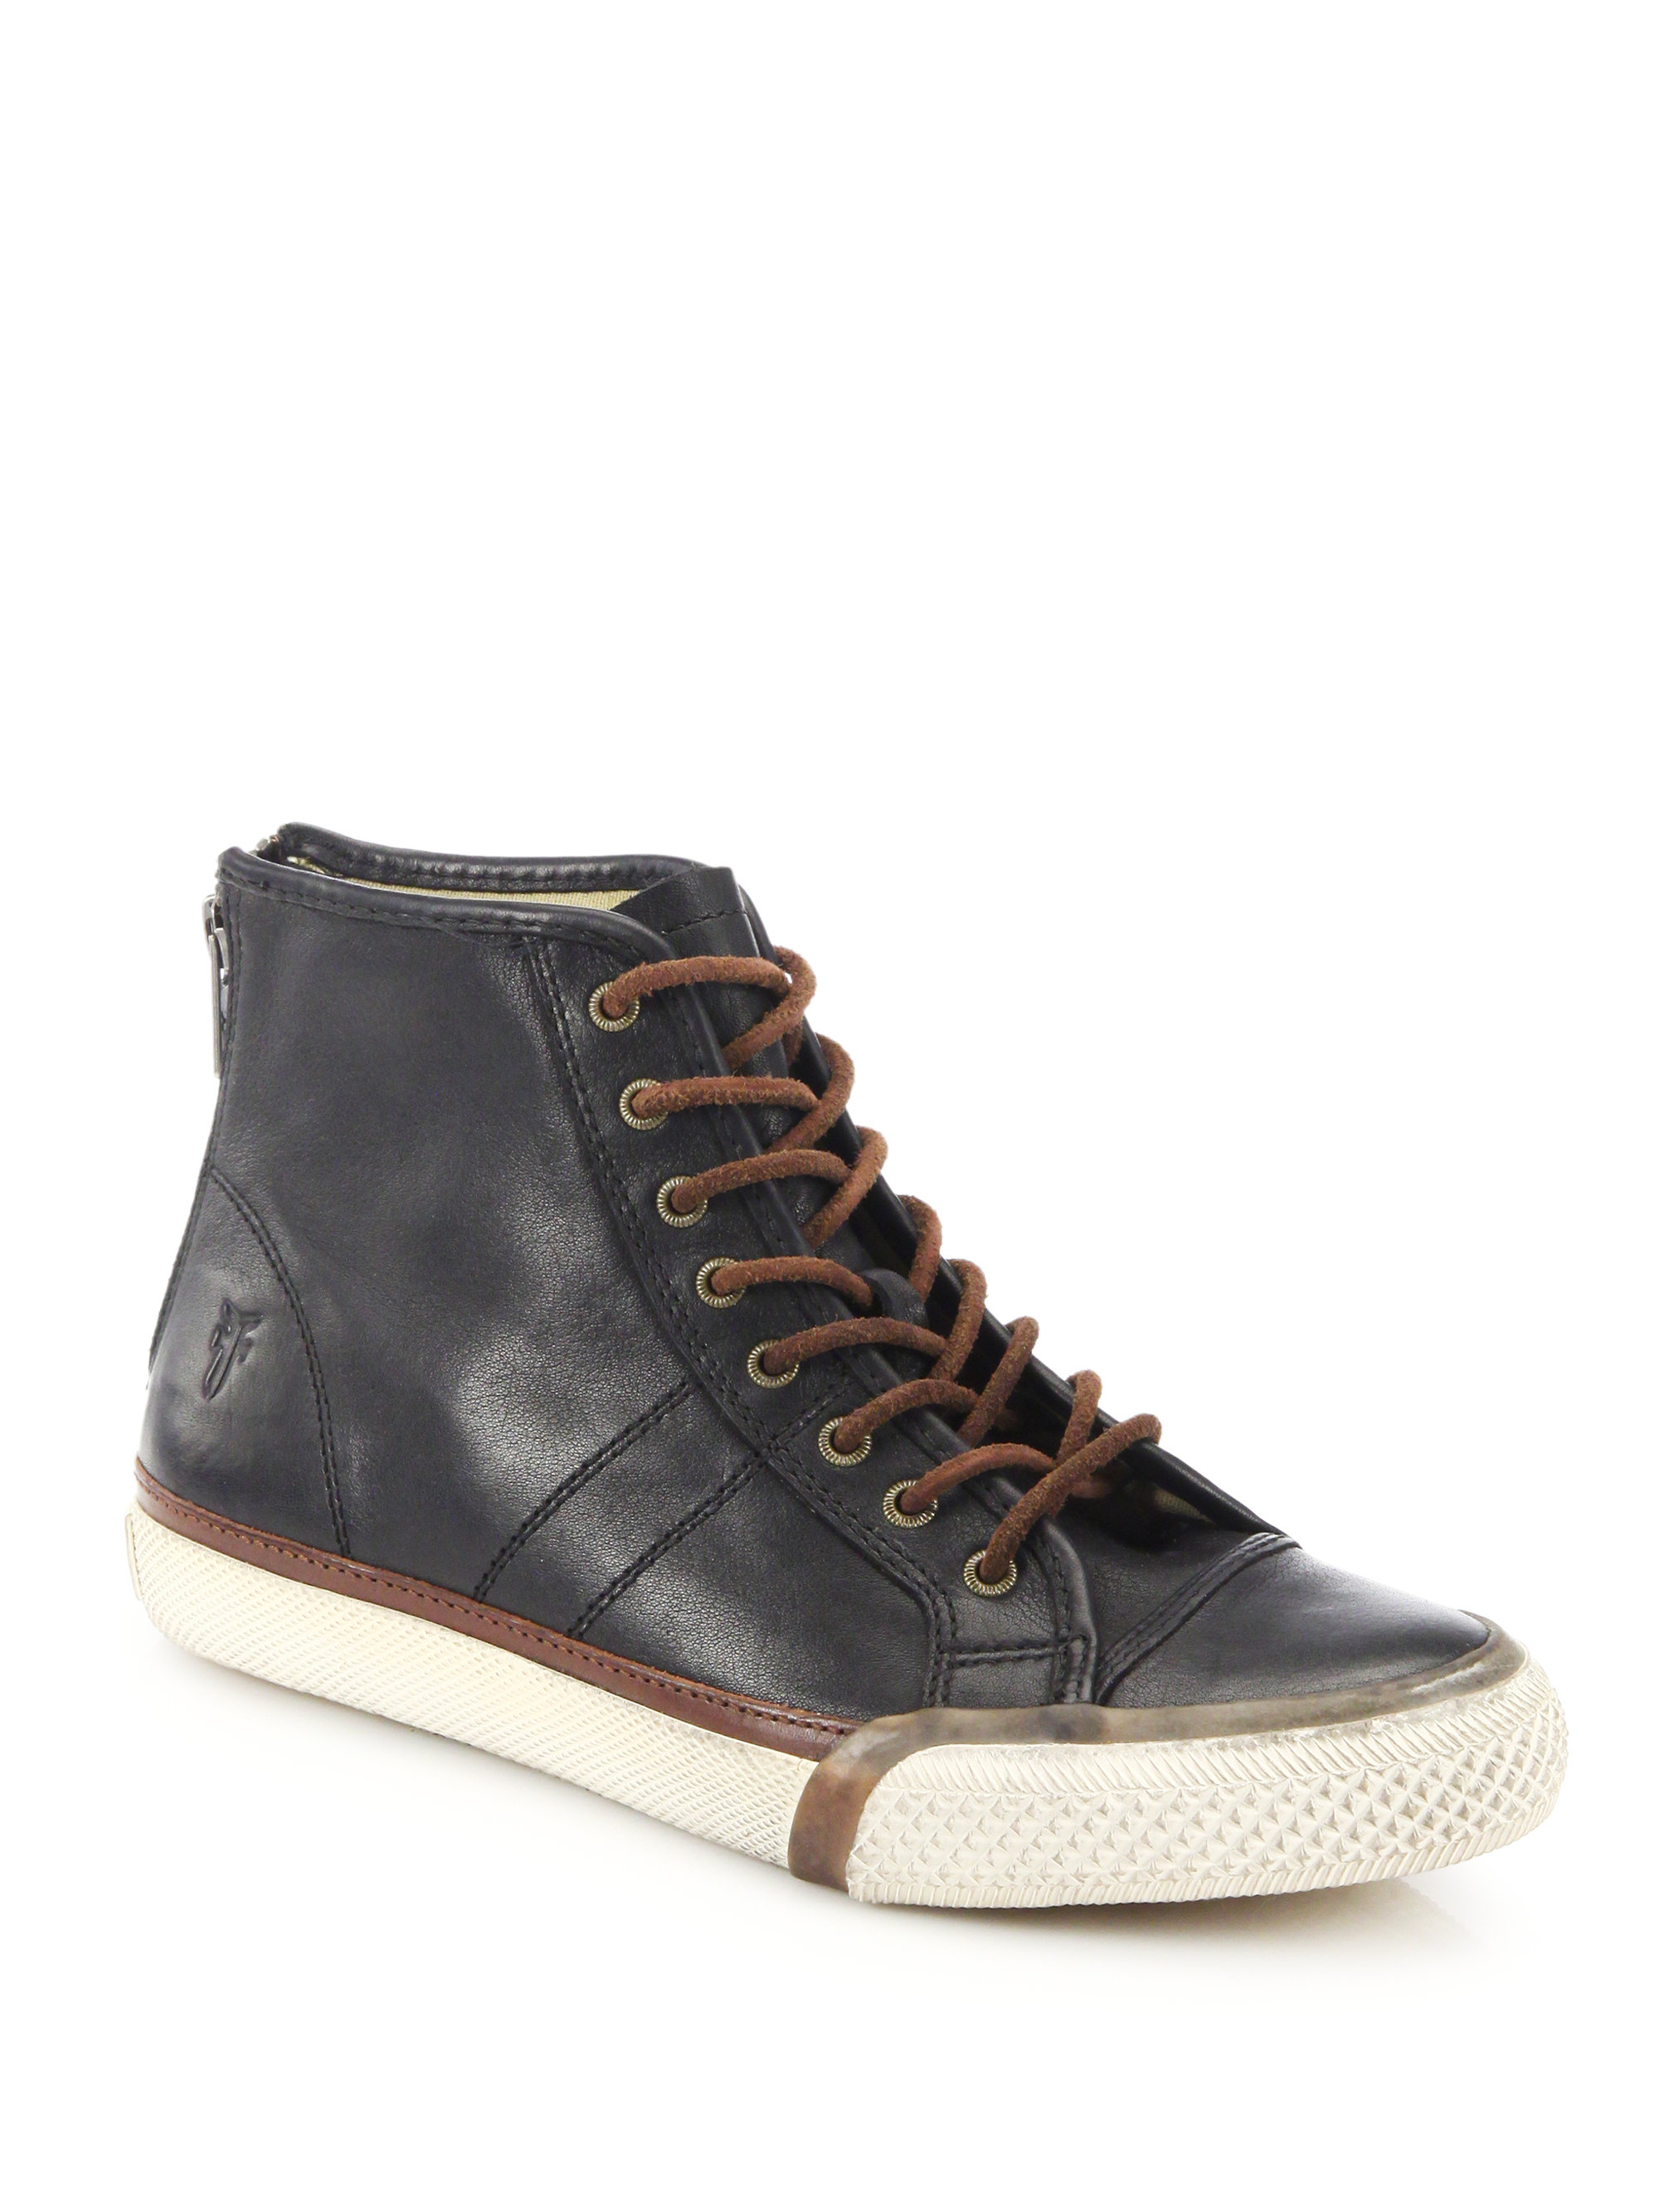 frye black leather sneakers